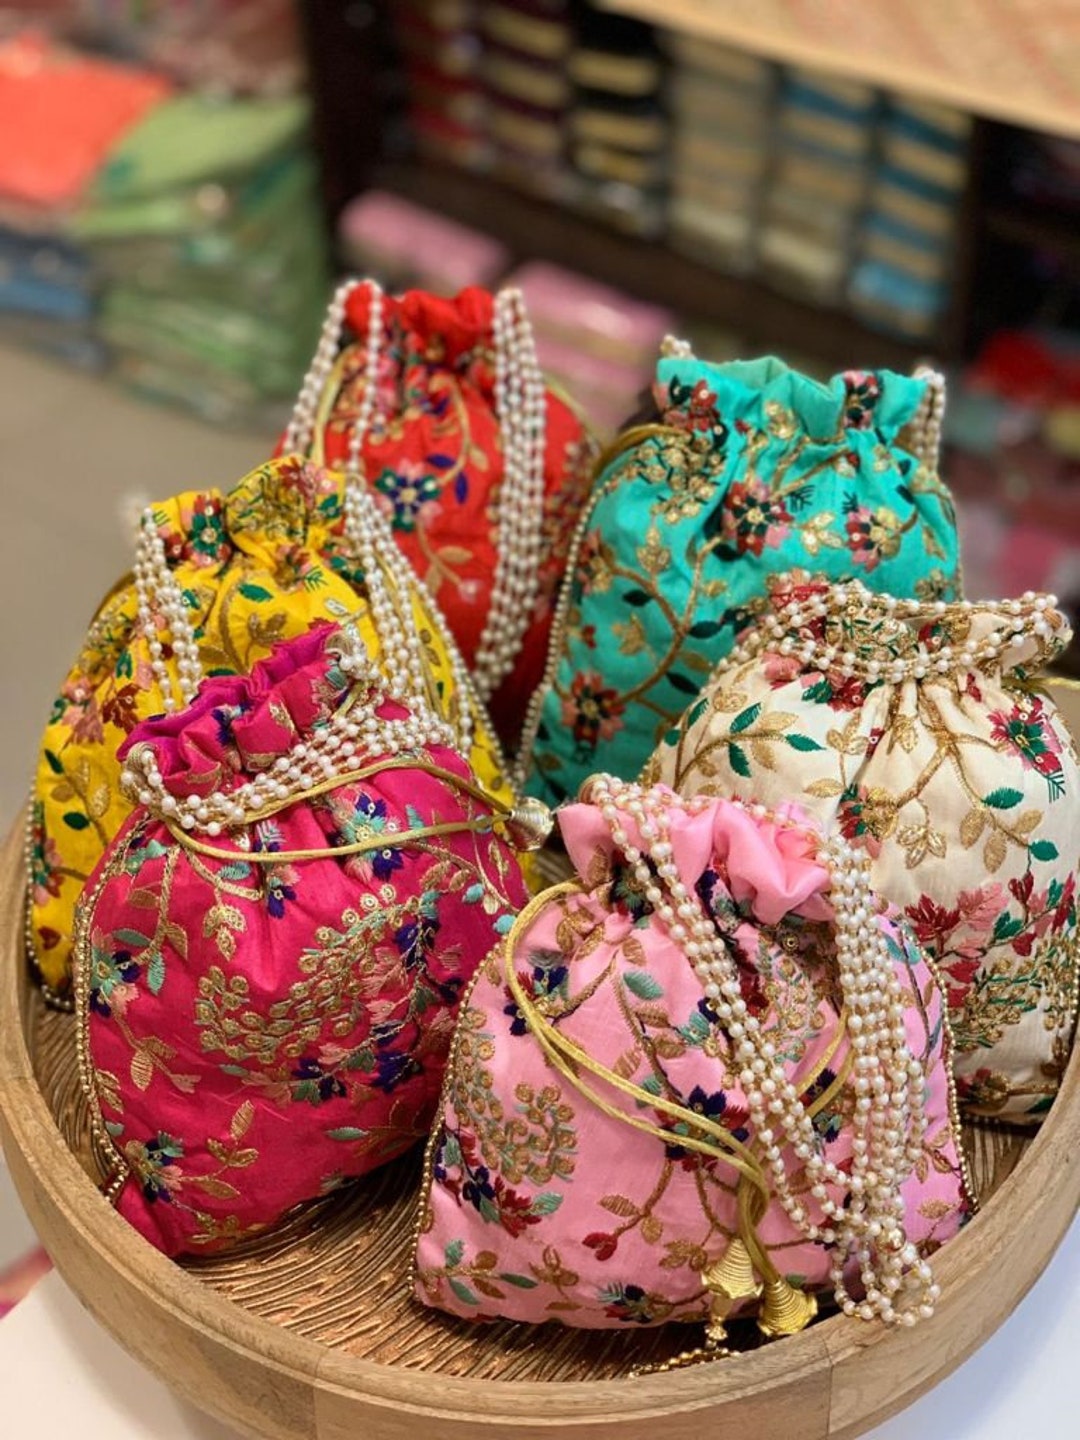 Designer Ladies Handbags Wholesaler in Dubai, UAE - Apples Bags